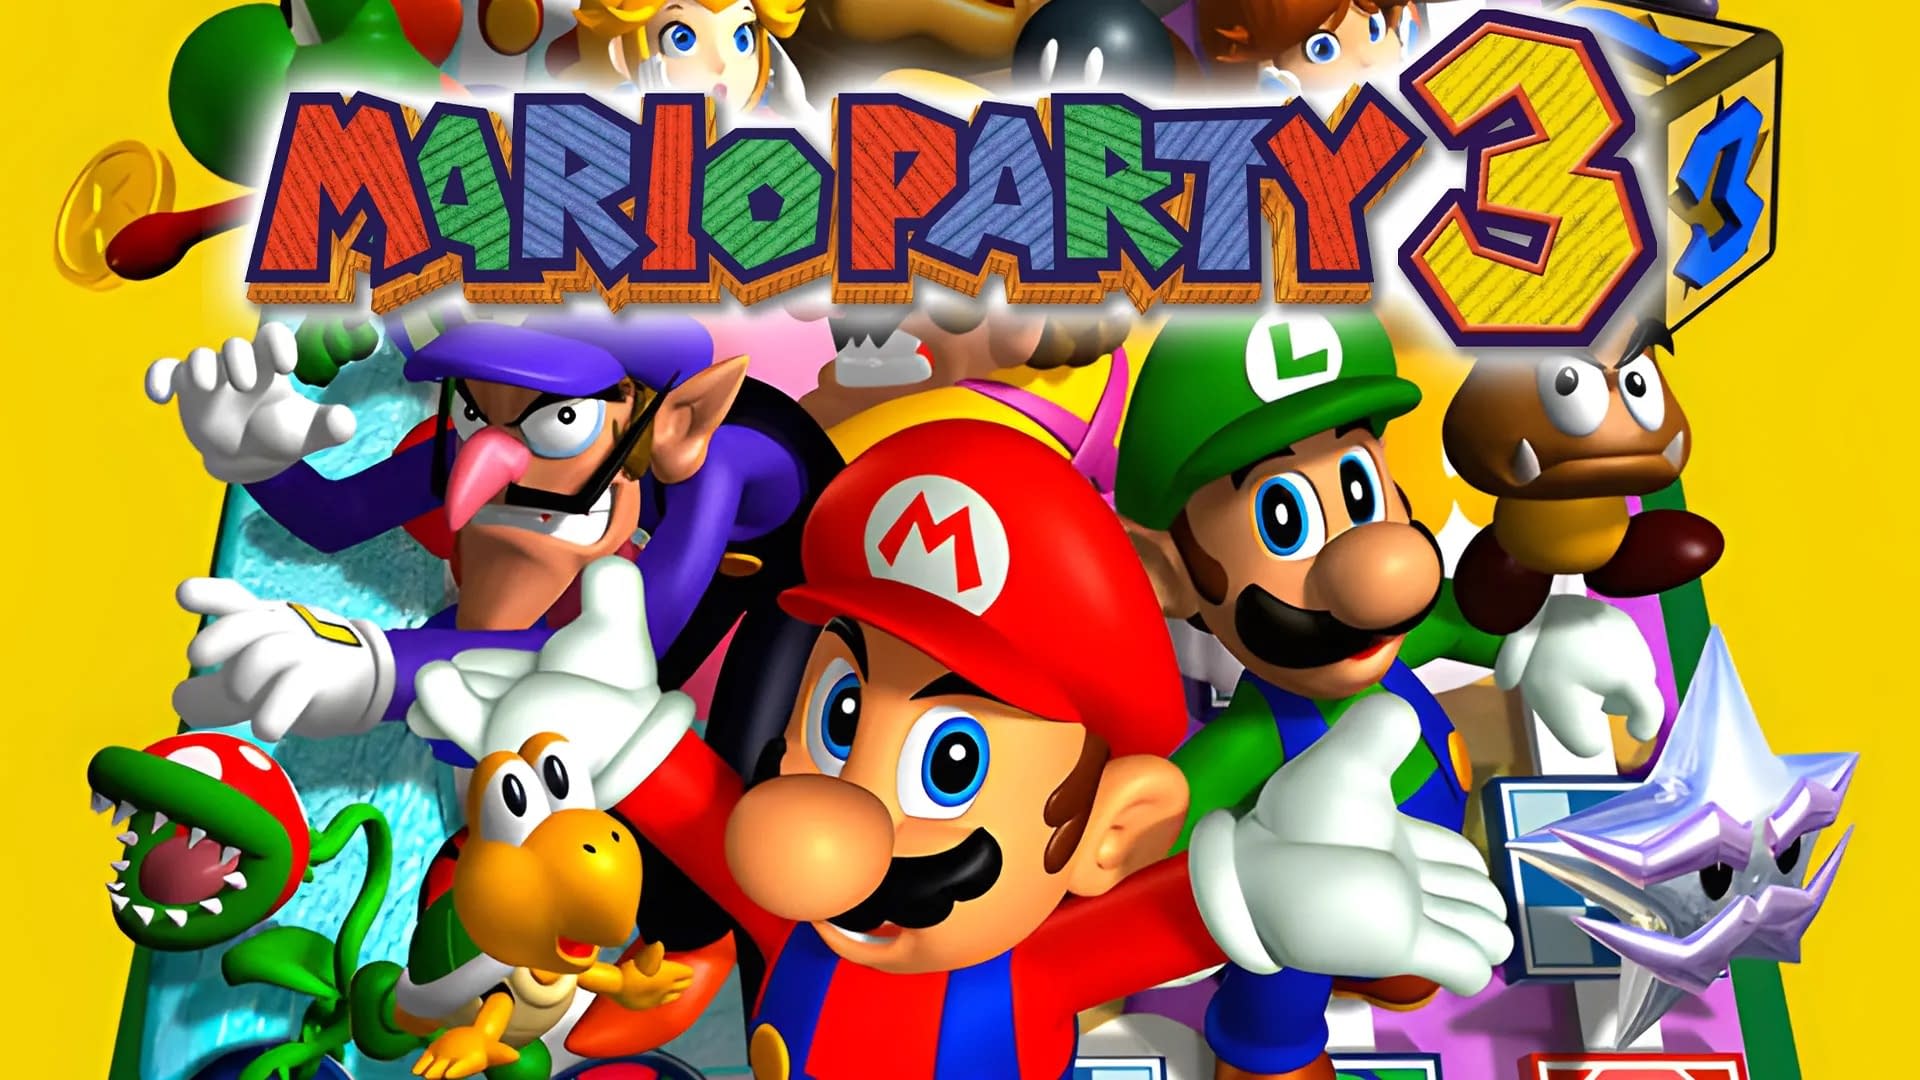 Mario Party 3 Nintendo 64 Game